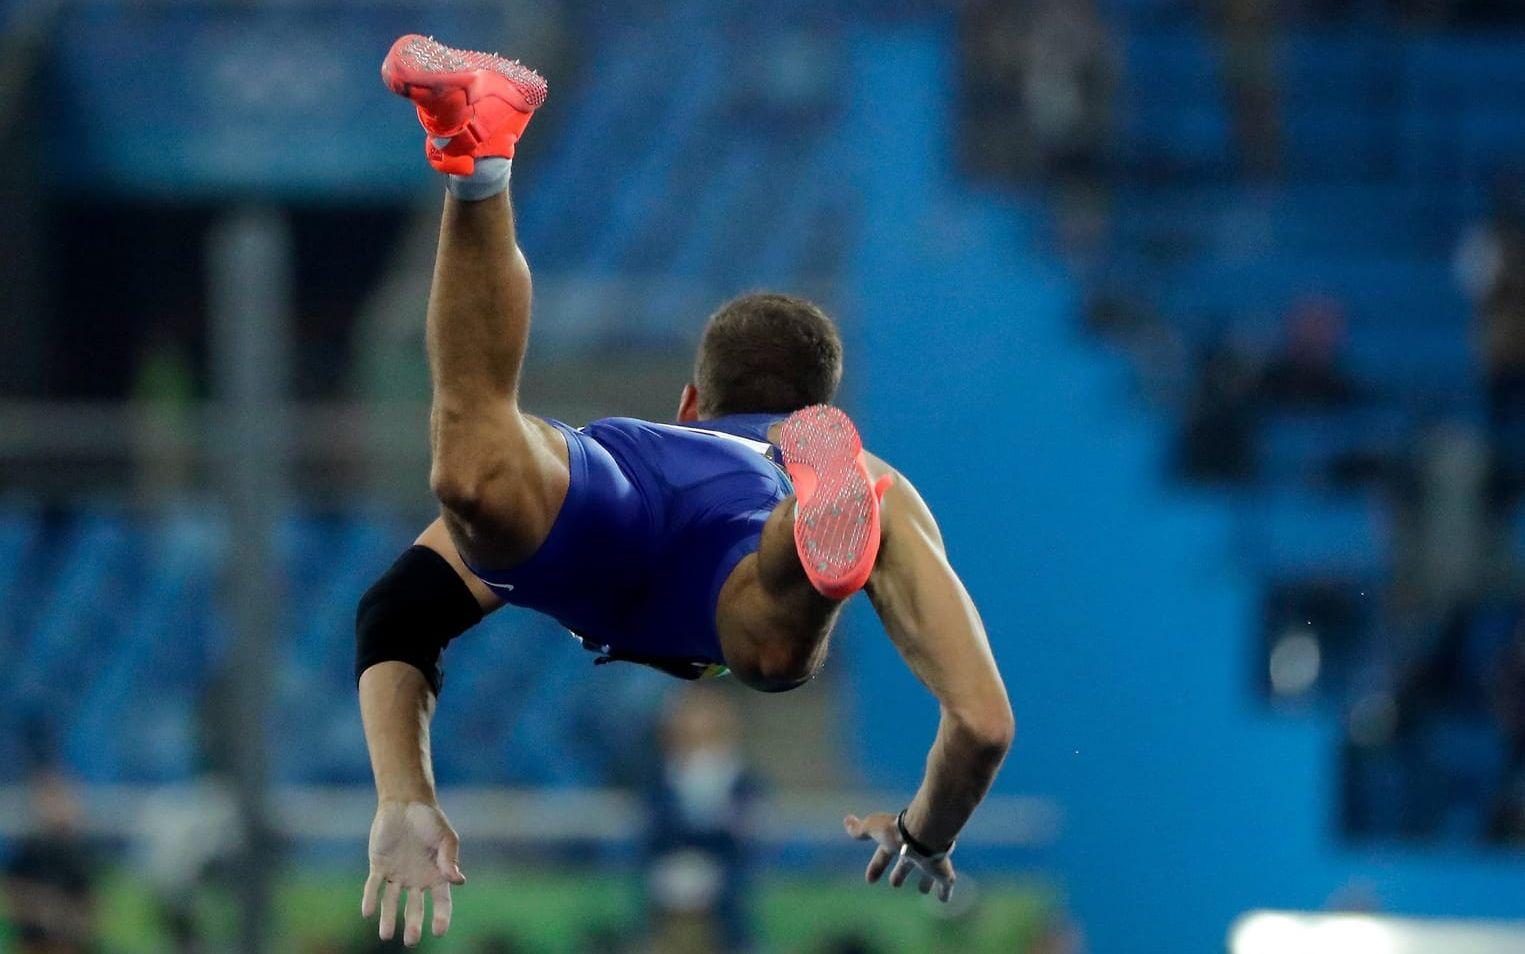 Ur balans. Estländaren Magnus Kirt lättar från marken under herrarnas spjuttävlingar i Rio. Foto: TT